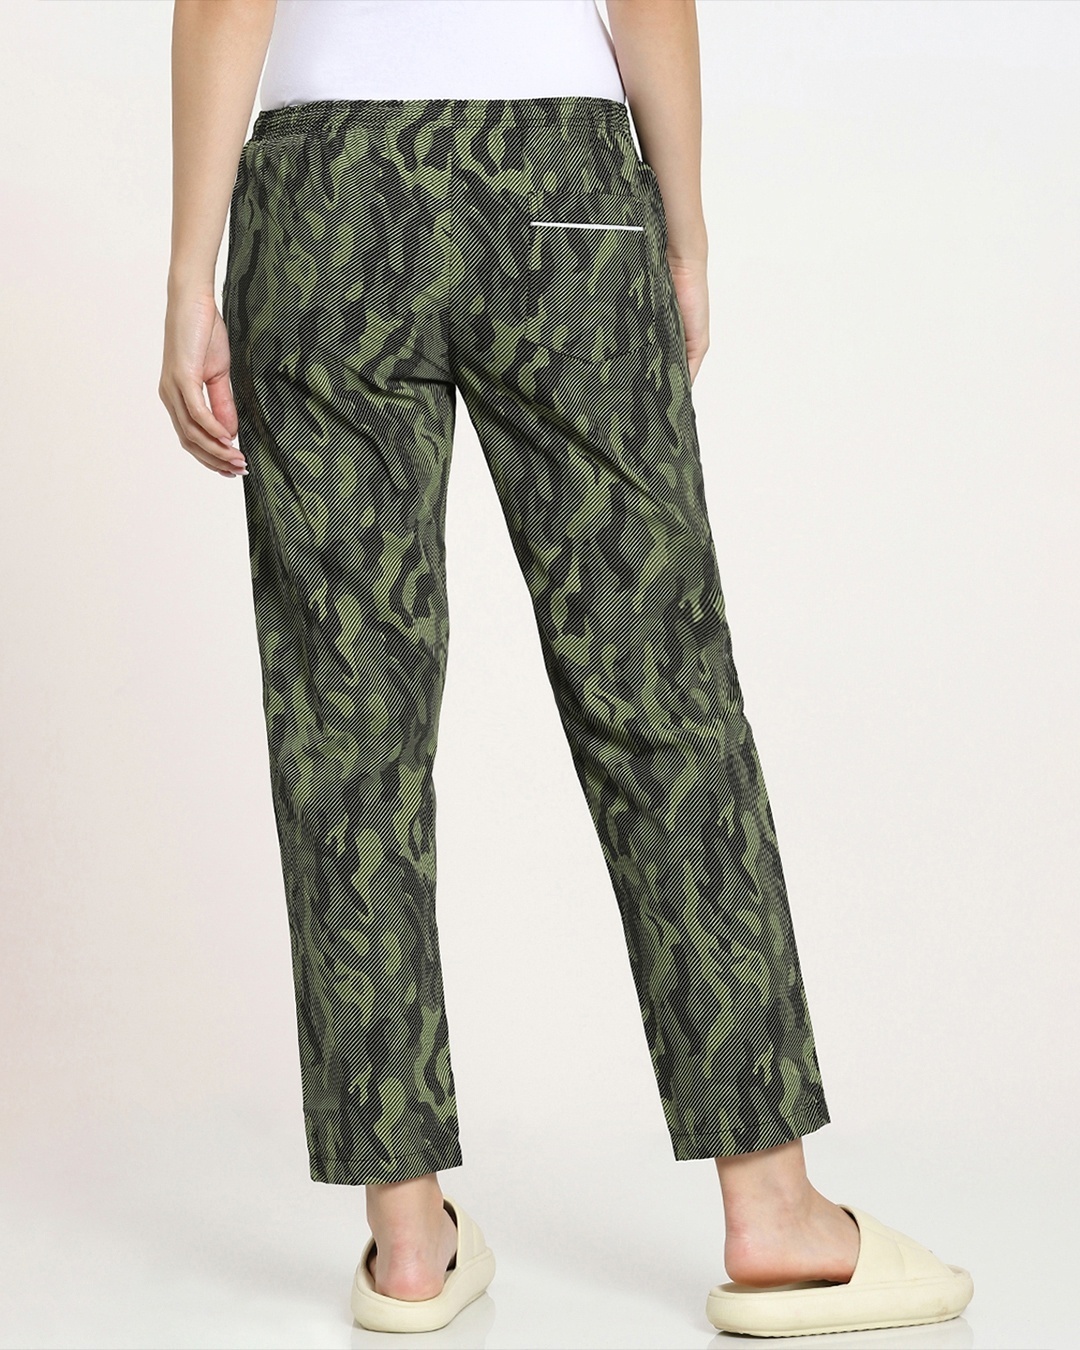 Shop Classic Camo All Over Printed Pyjama-Design